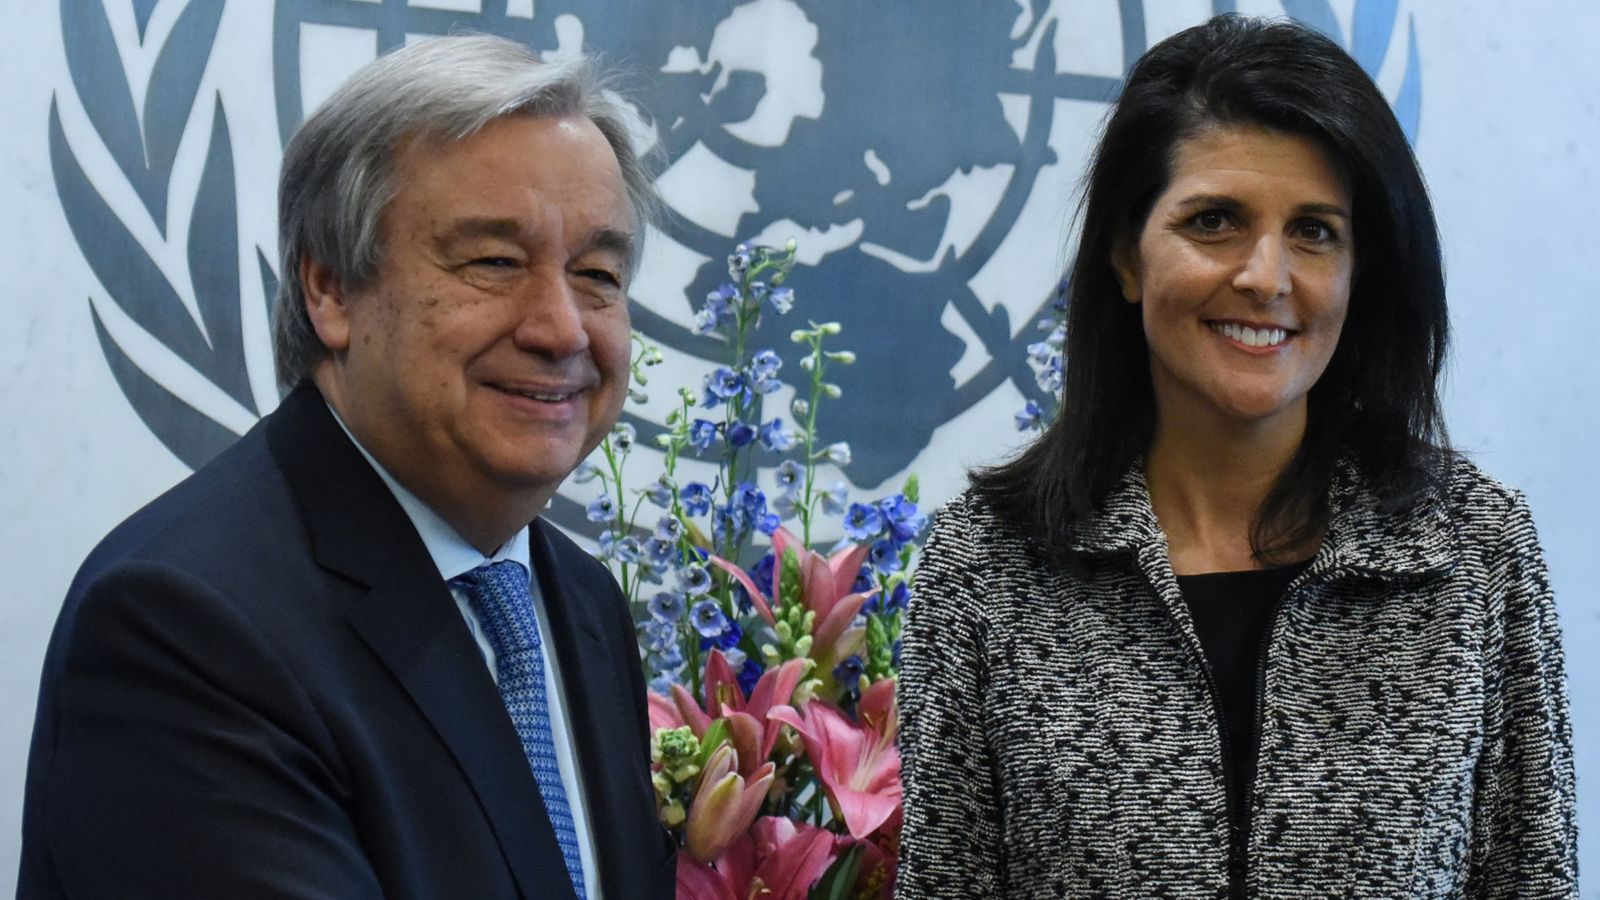 Foto: La nueva embajadora estadounidense ante la ONU, Nikki Haley, junto al secretario general del organismo António Guterres, el 27 de enero de 2017 (Reuters)